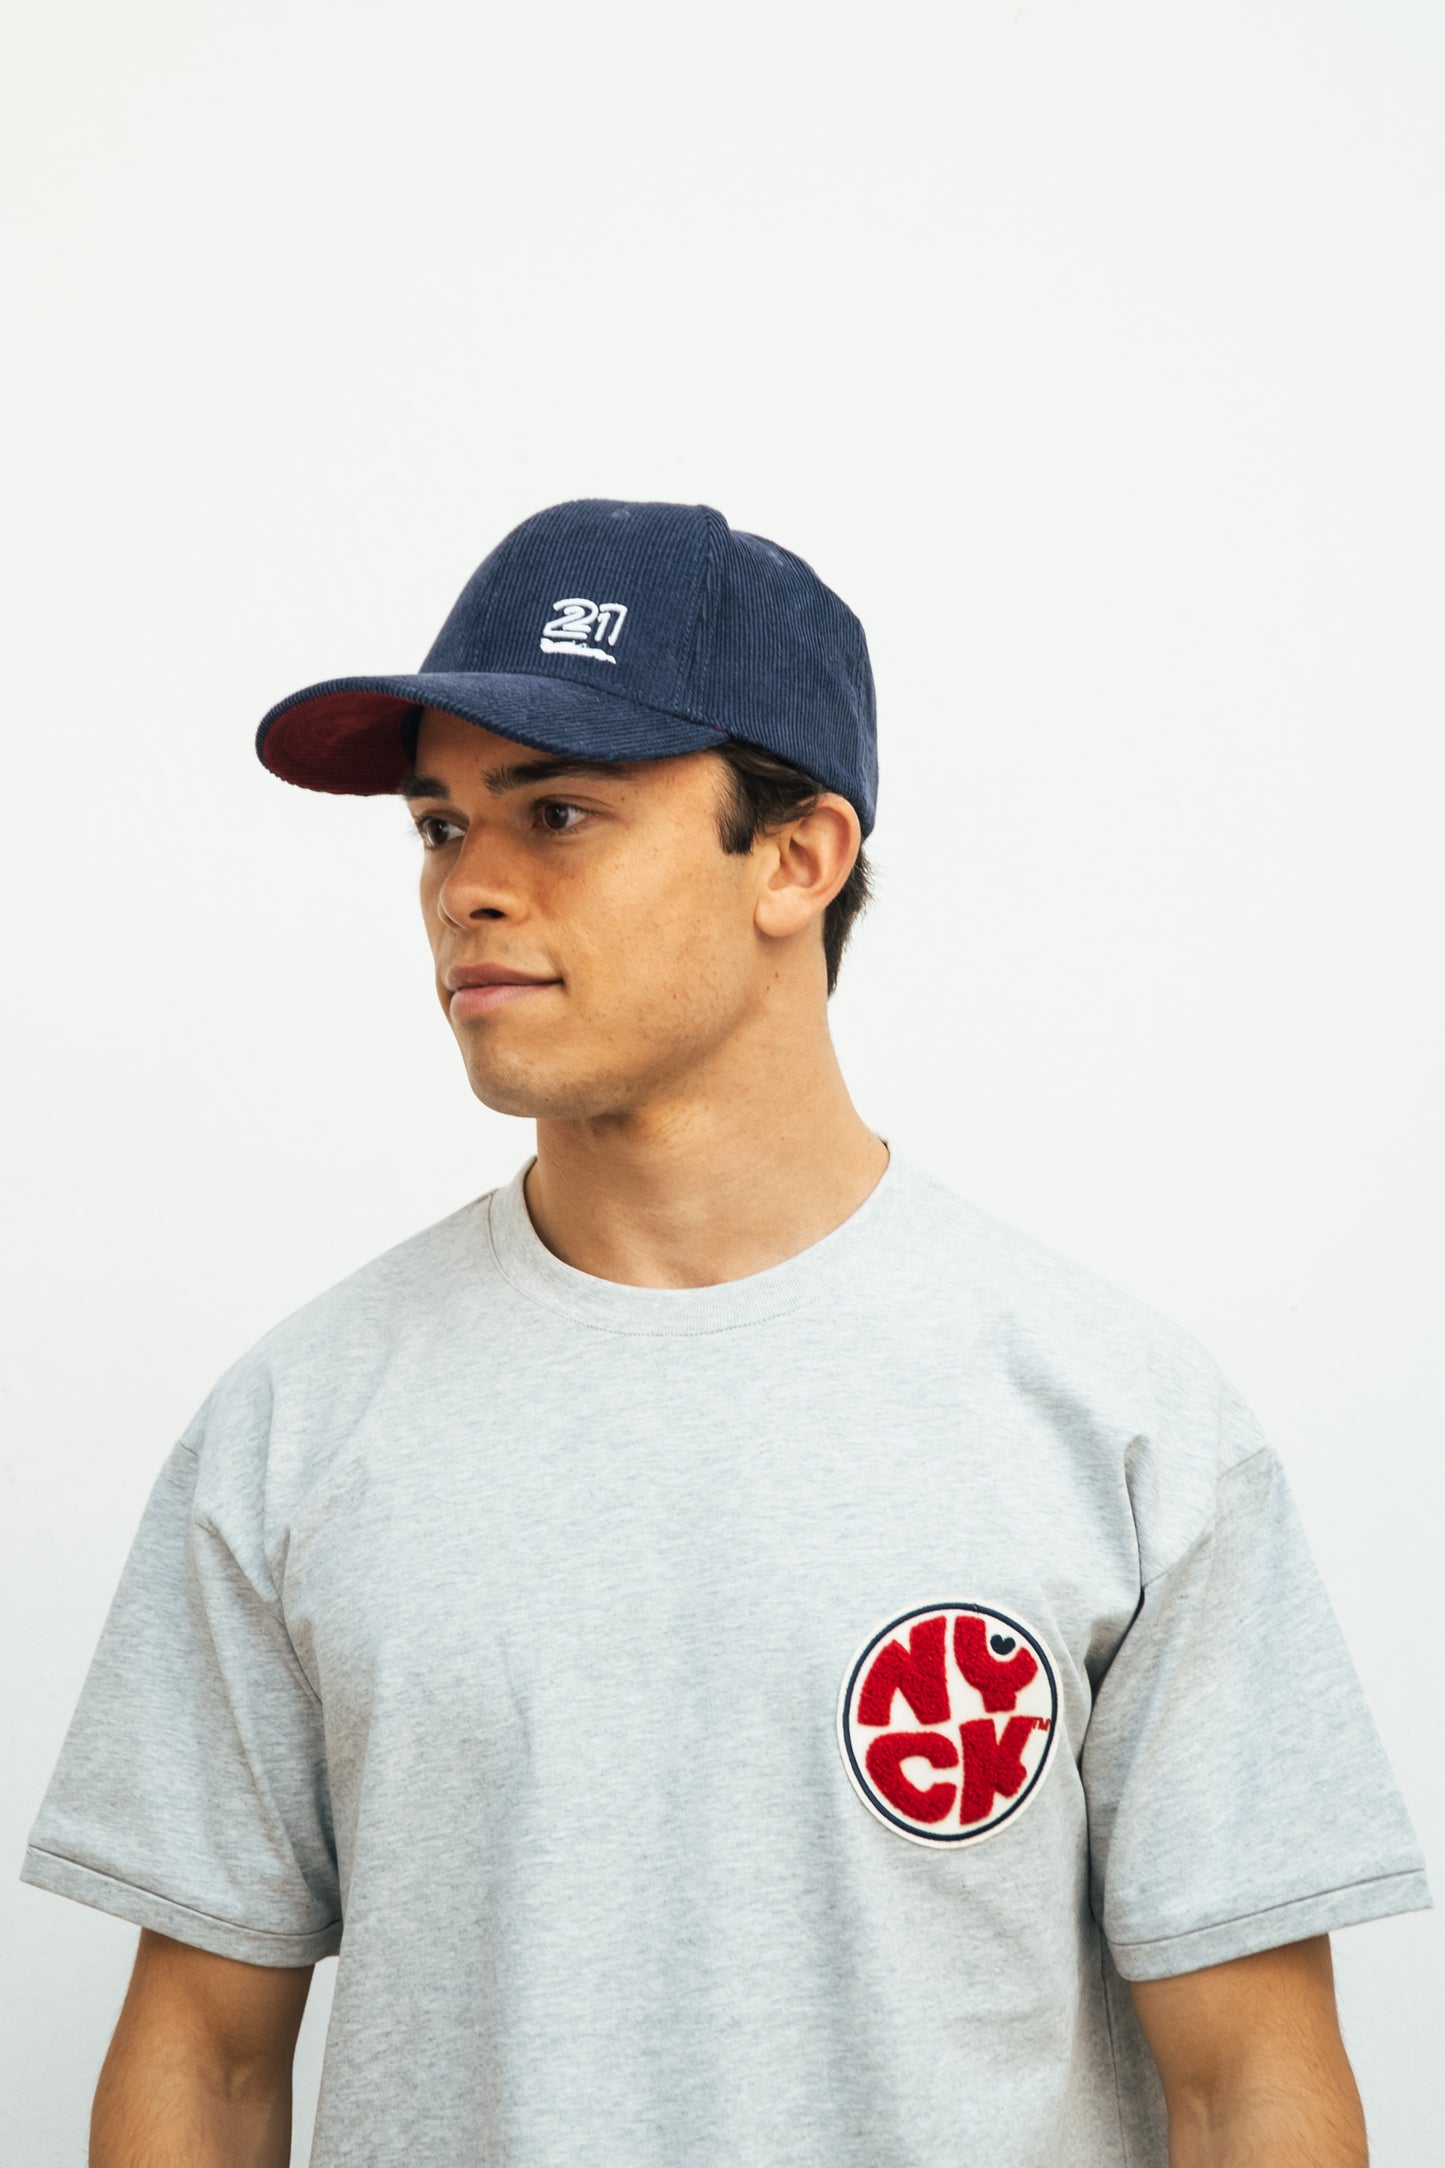 The official NYCK rib cap